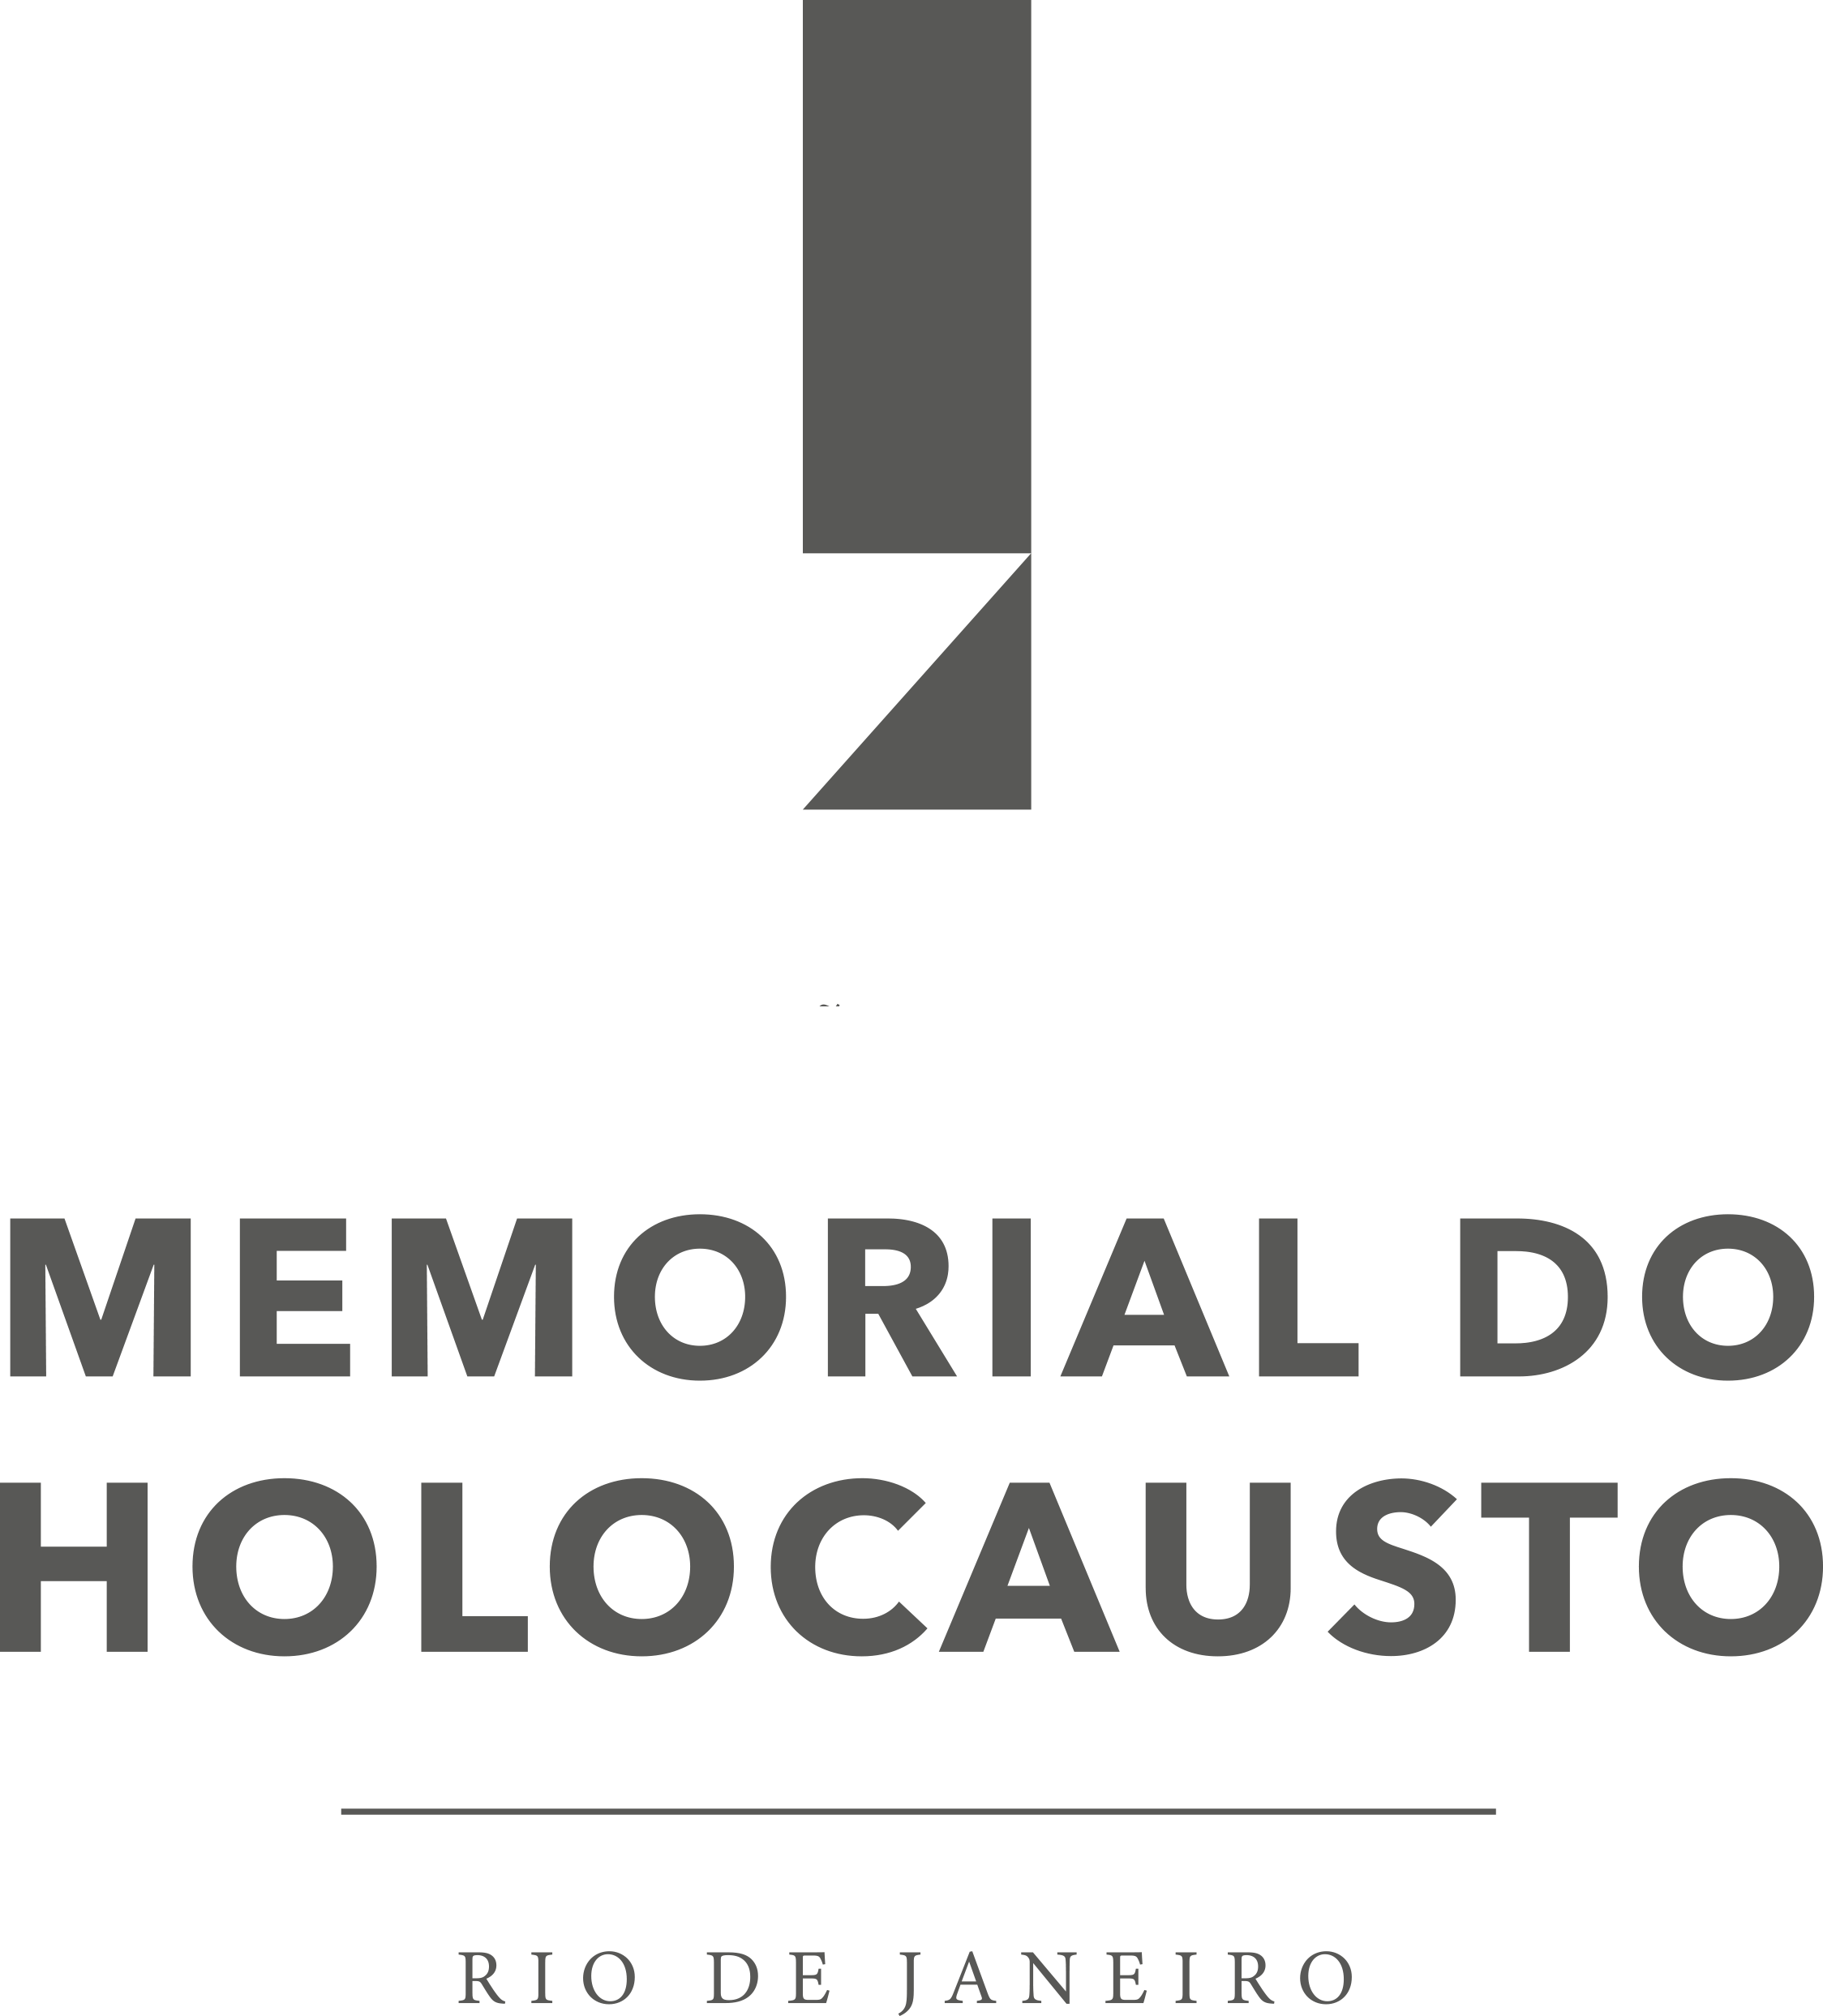 Memorial do Holocausto - Rio de Janeiro